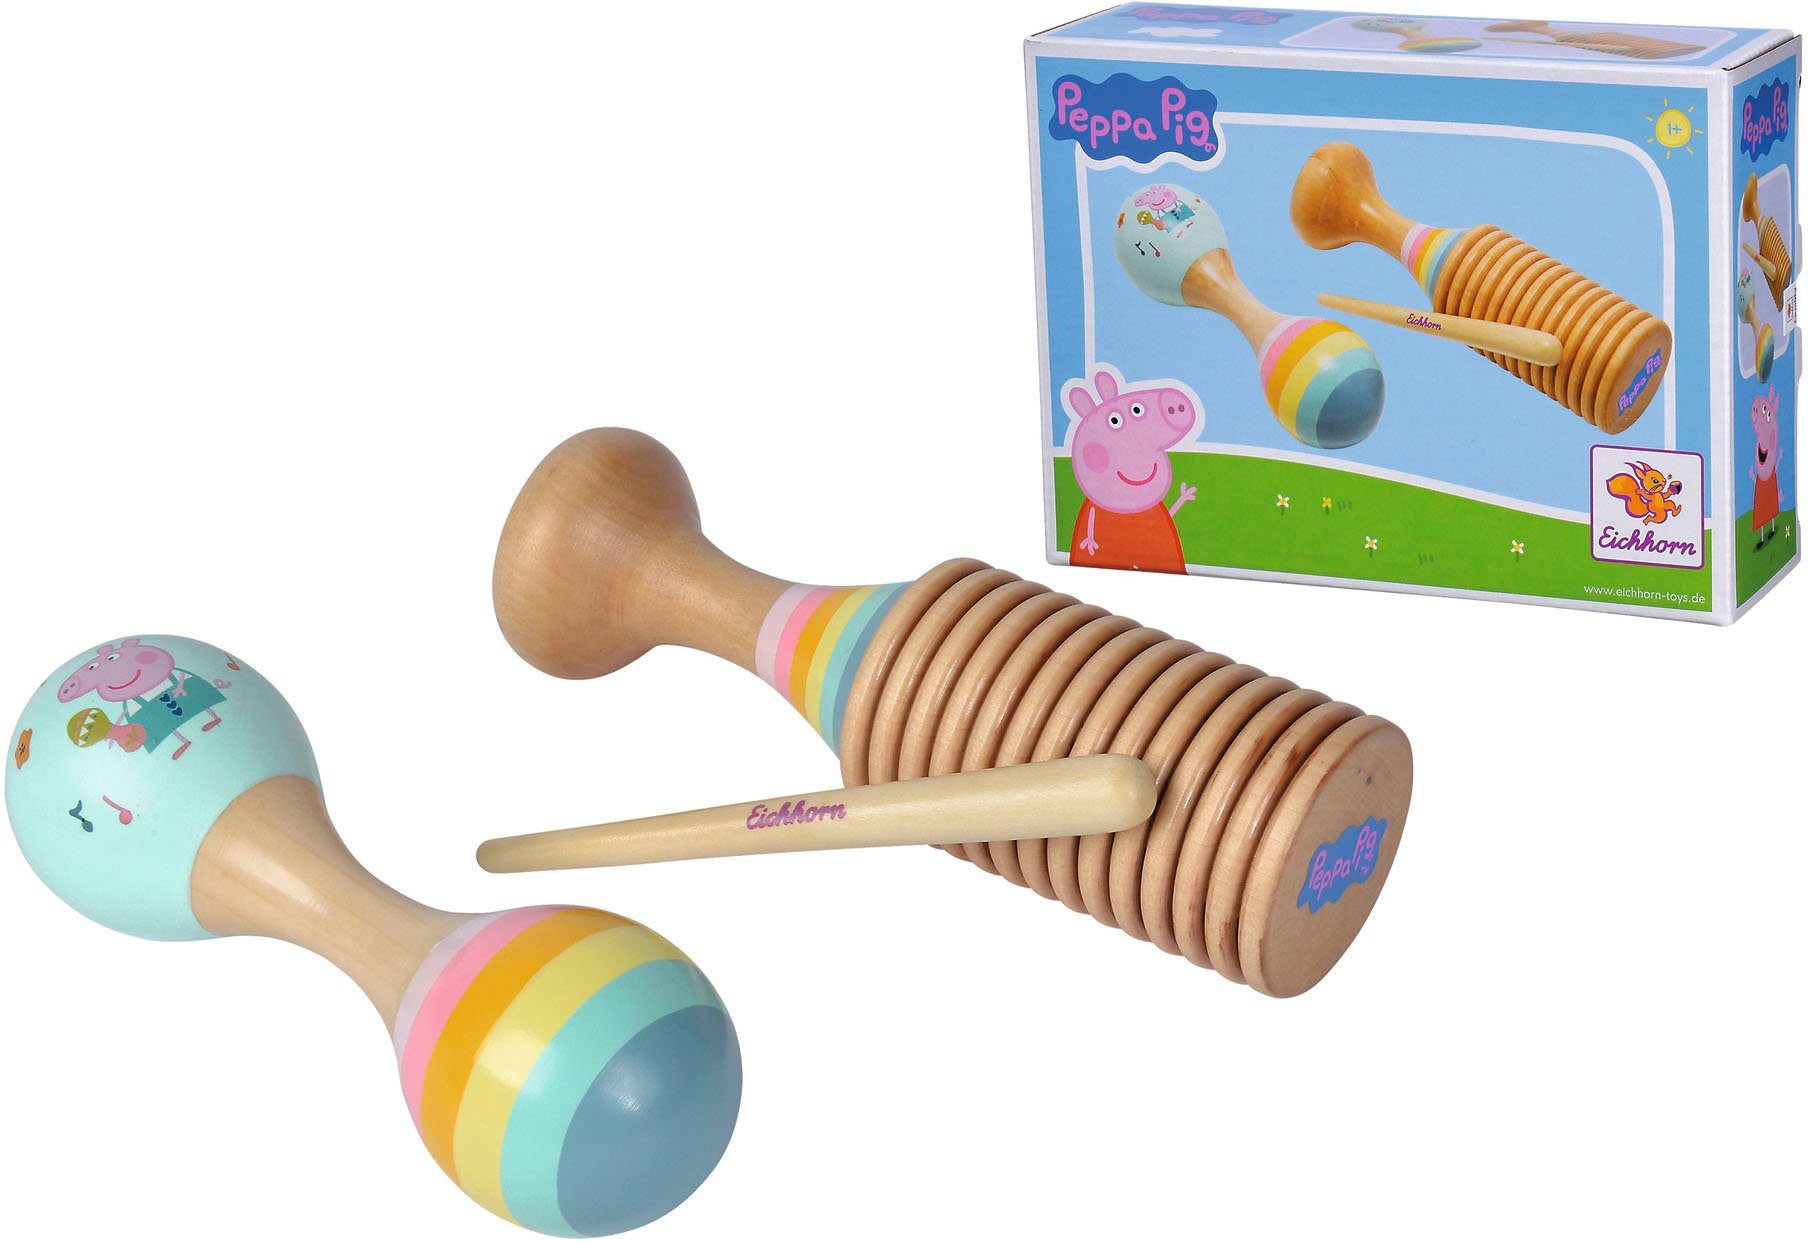 Set Pig Maraca Ratsche Eichhorn Holzspielzeug, Peppa und Spielzeug-Musikinstrument